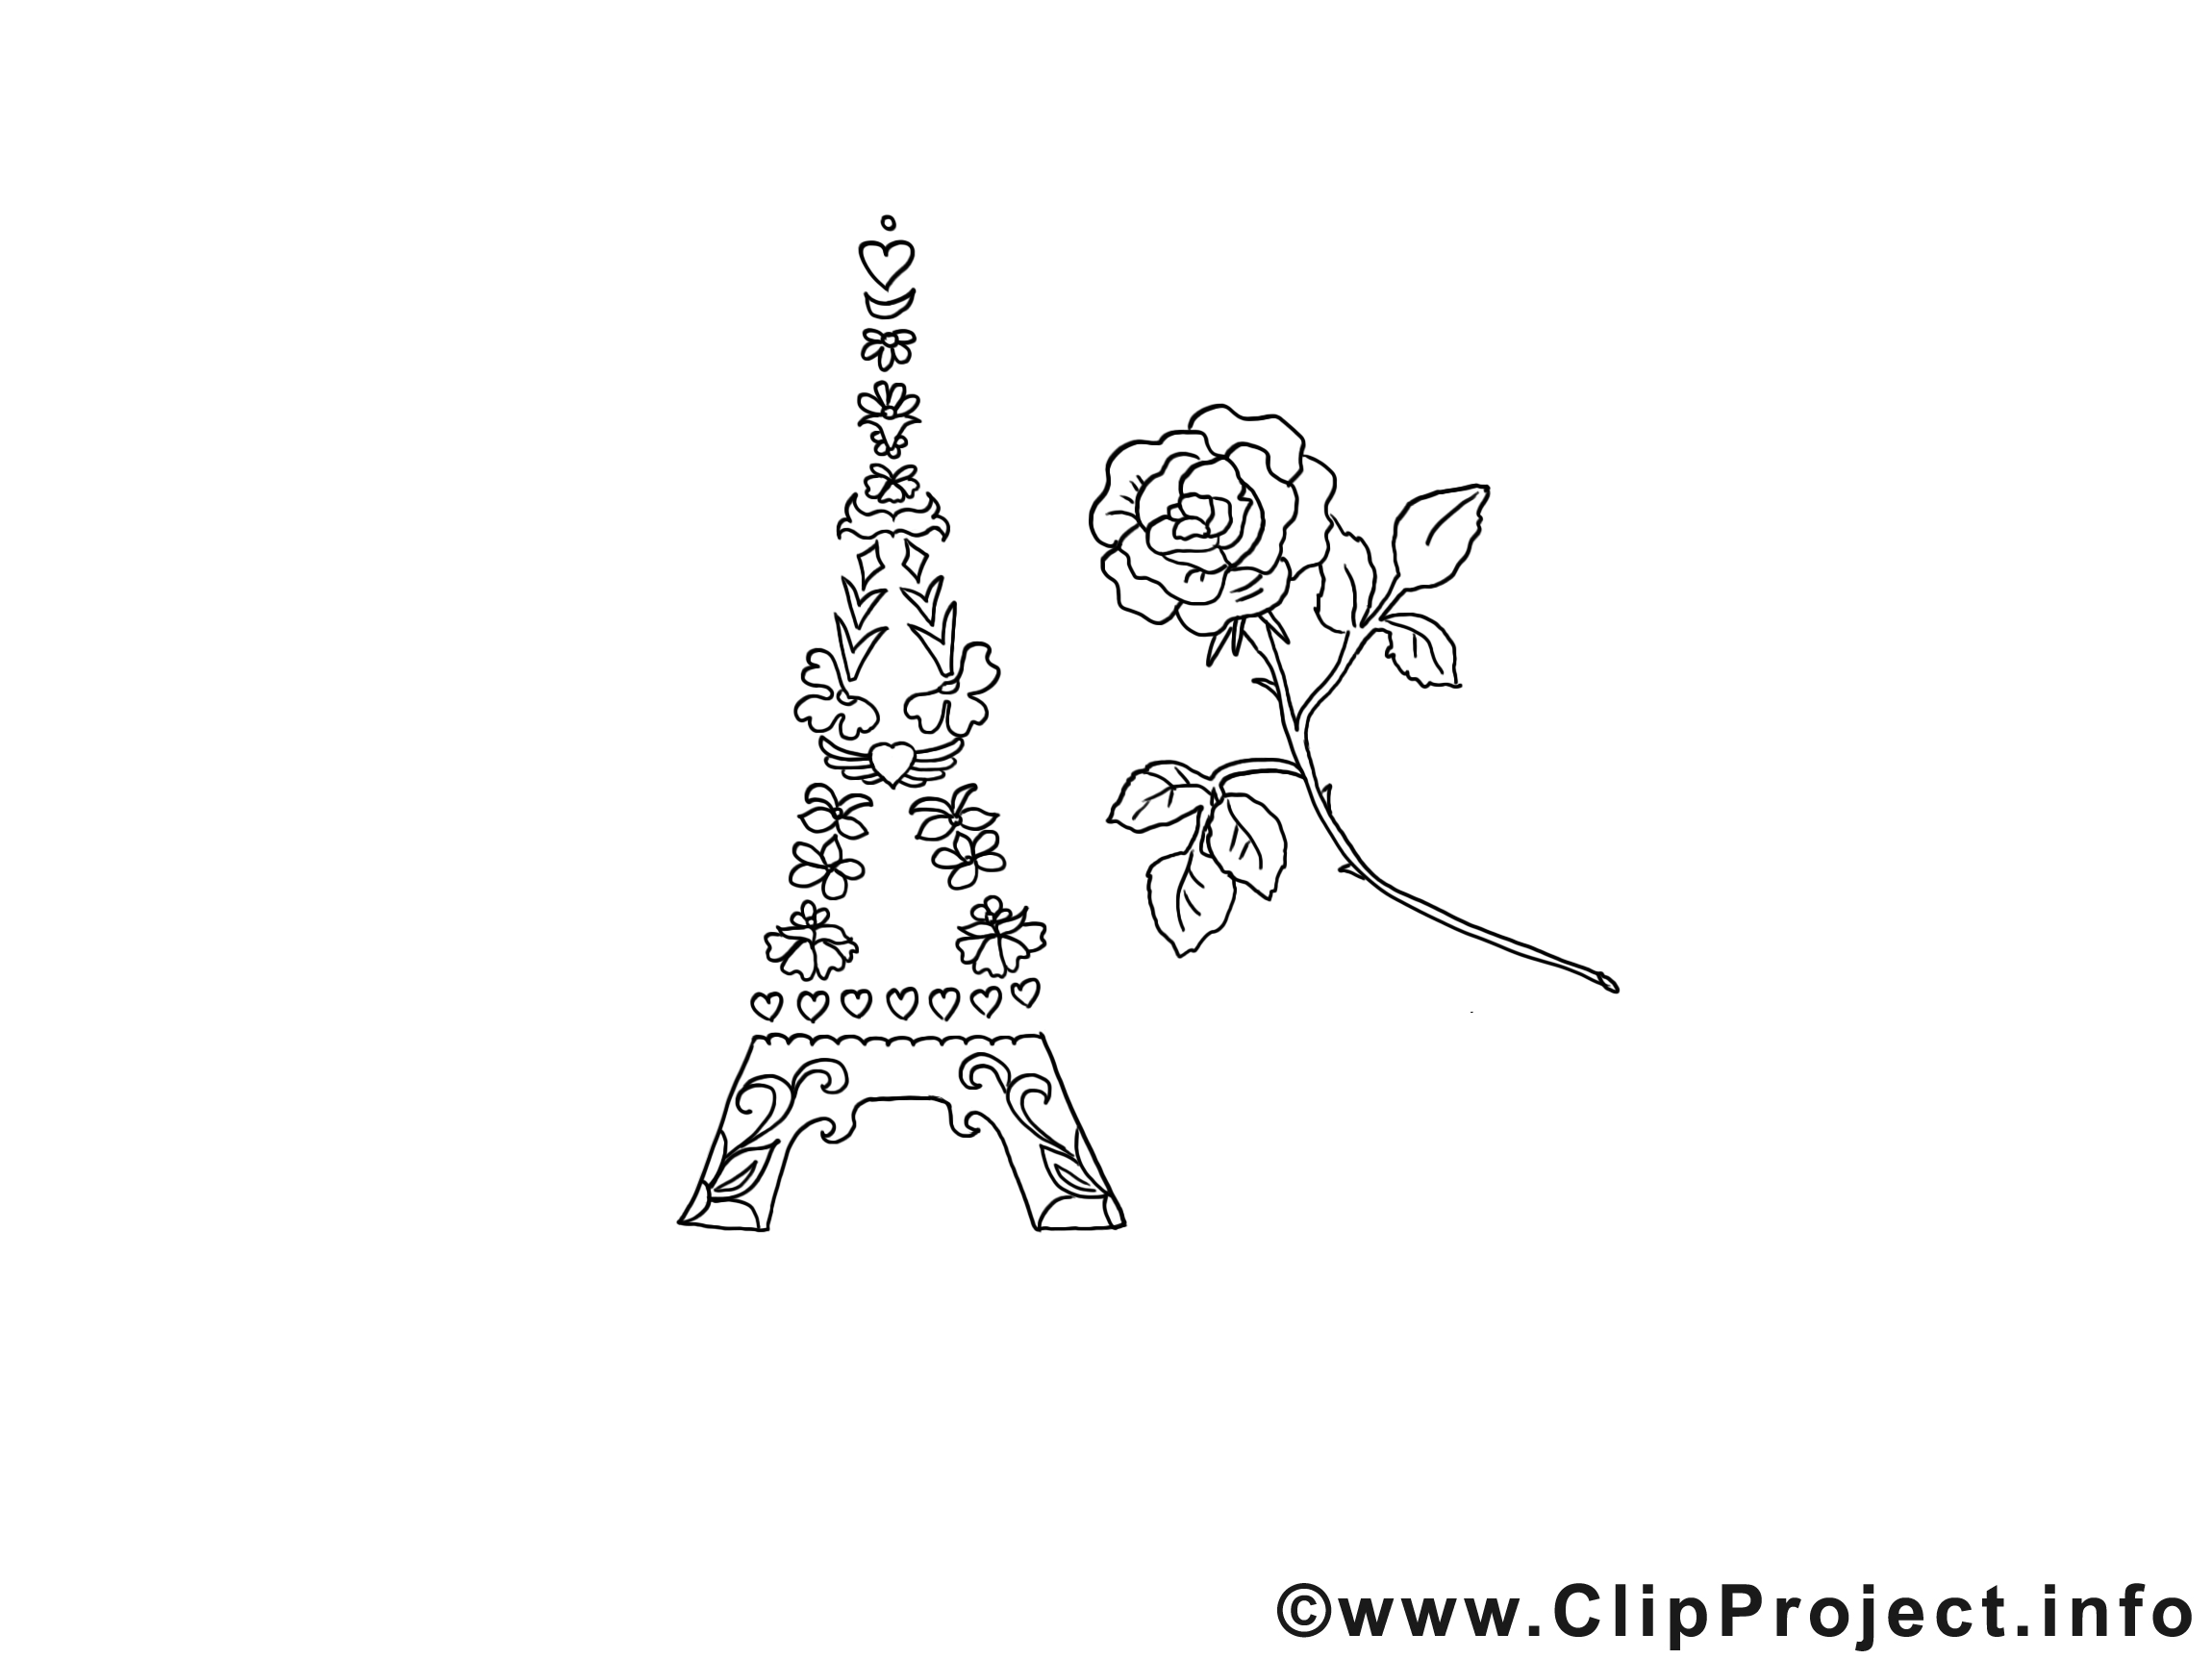 Tour Eiffel illustration à imprimer - Merci images